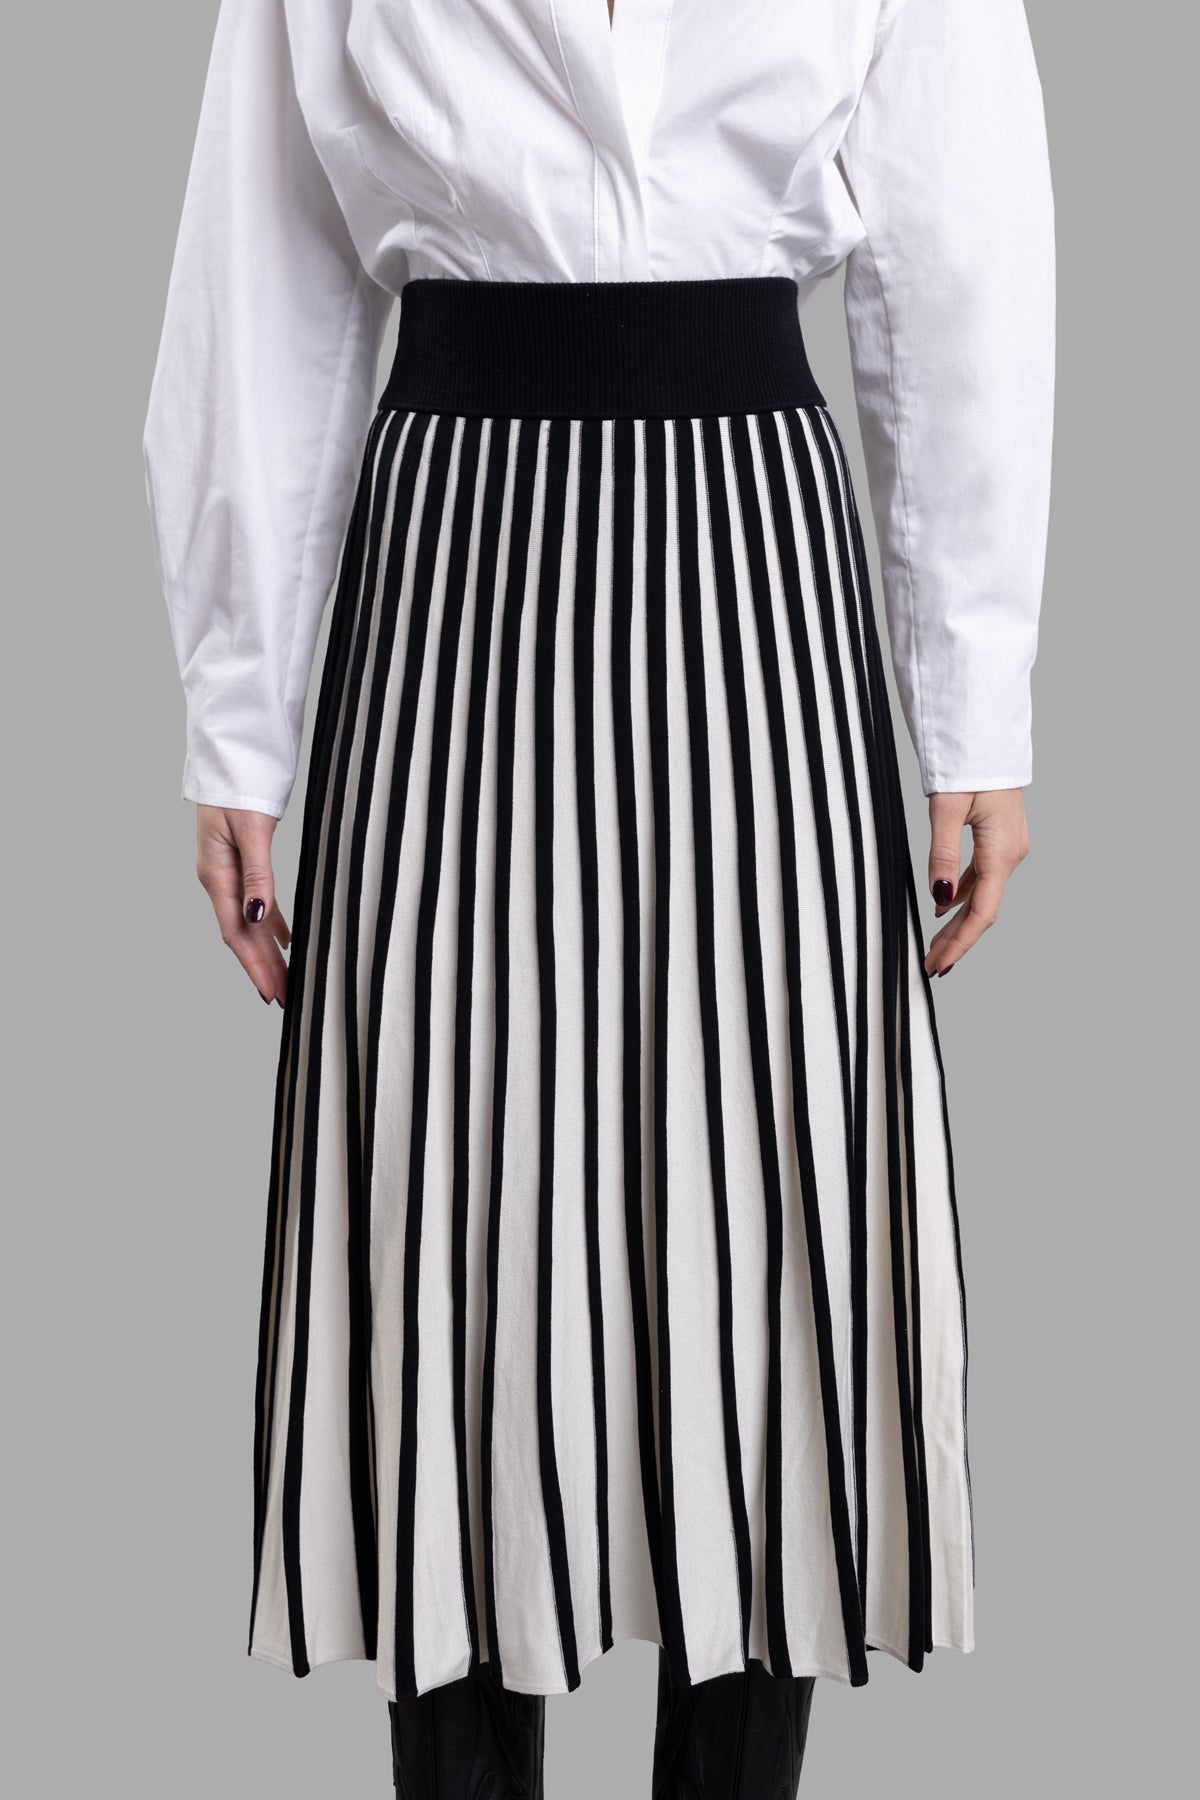 Stripes Skirt